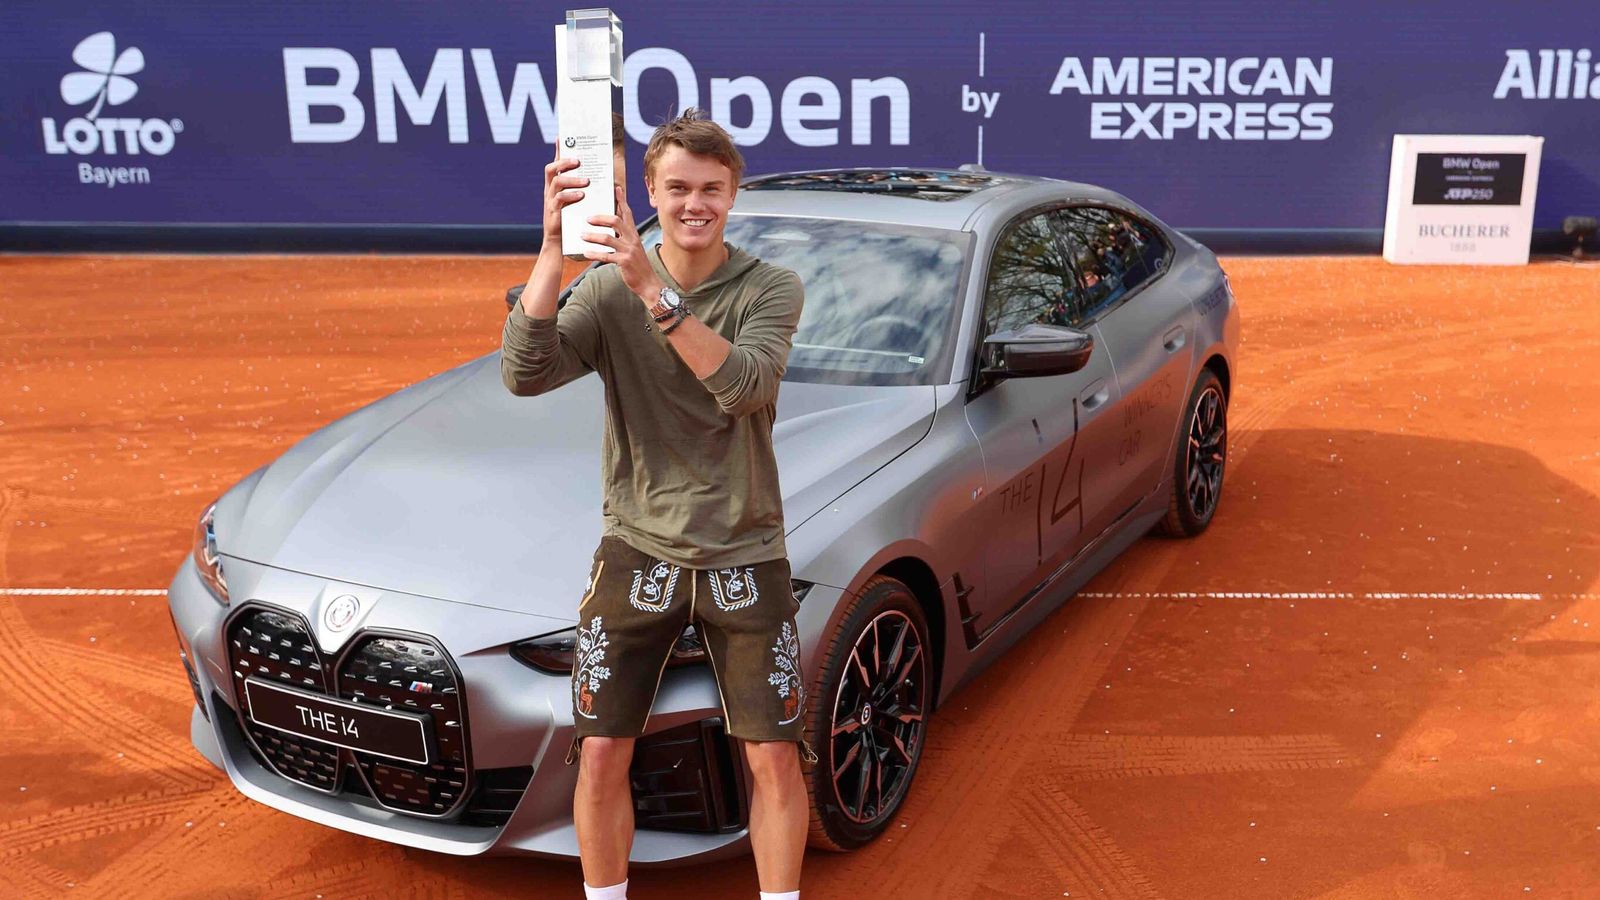 BMW Open in München steigt nach Halle und Hamburg auch in eine 500er-Kategorie auf Tennis News Sky Sport